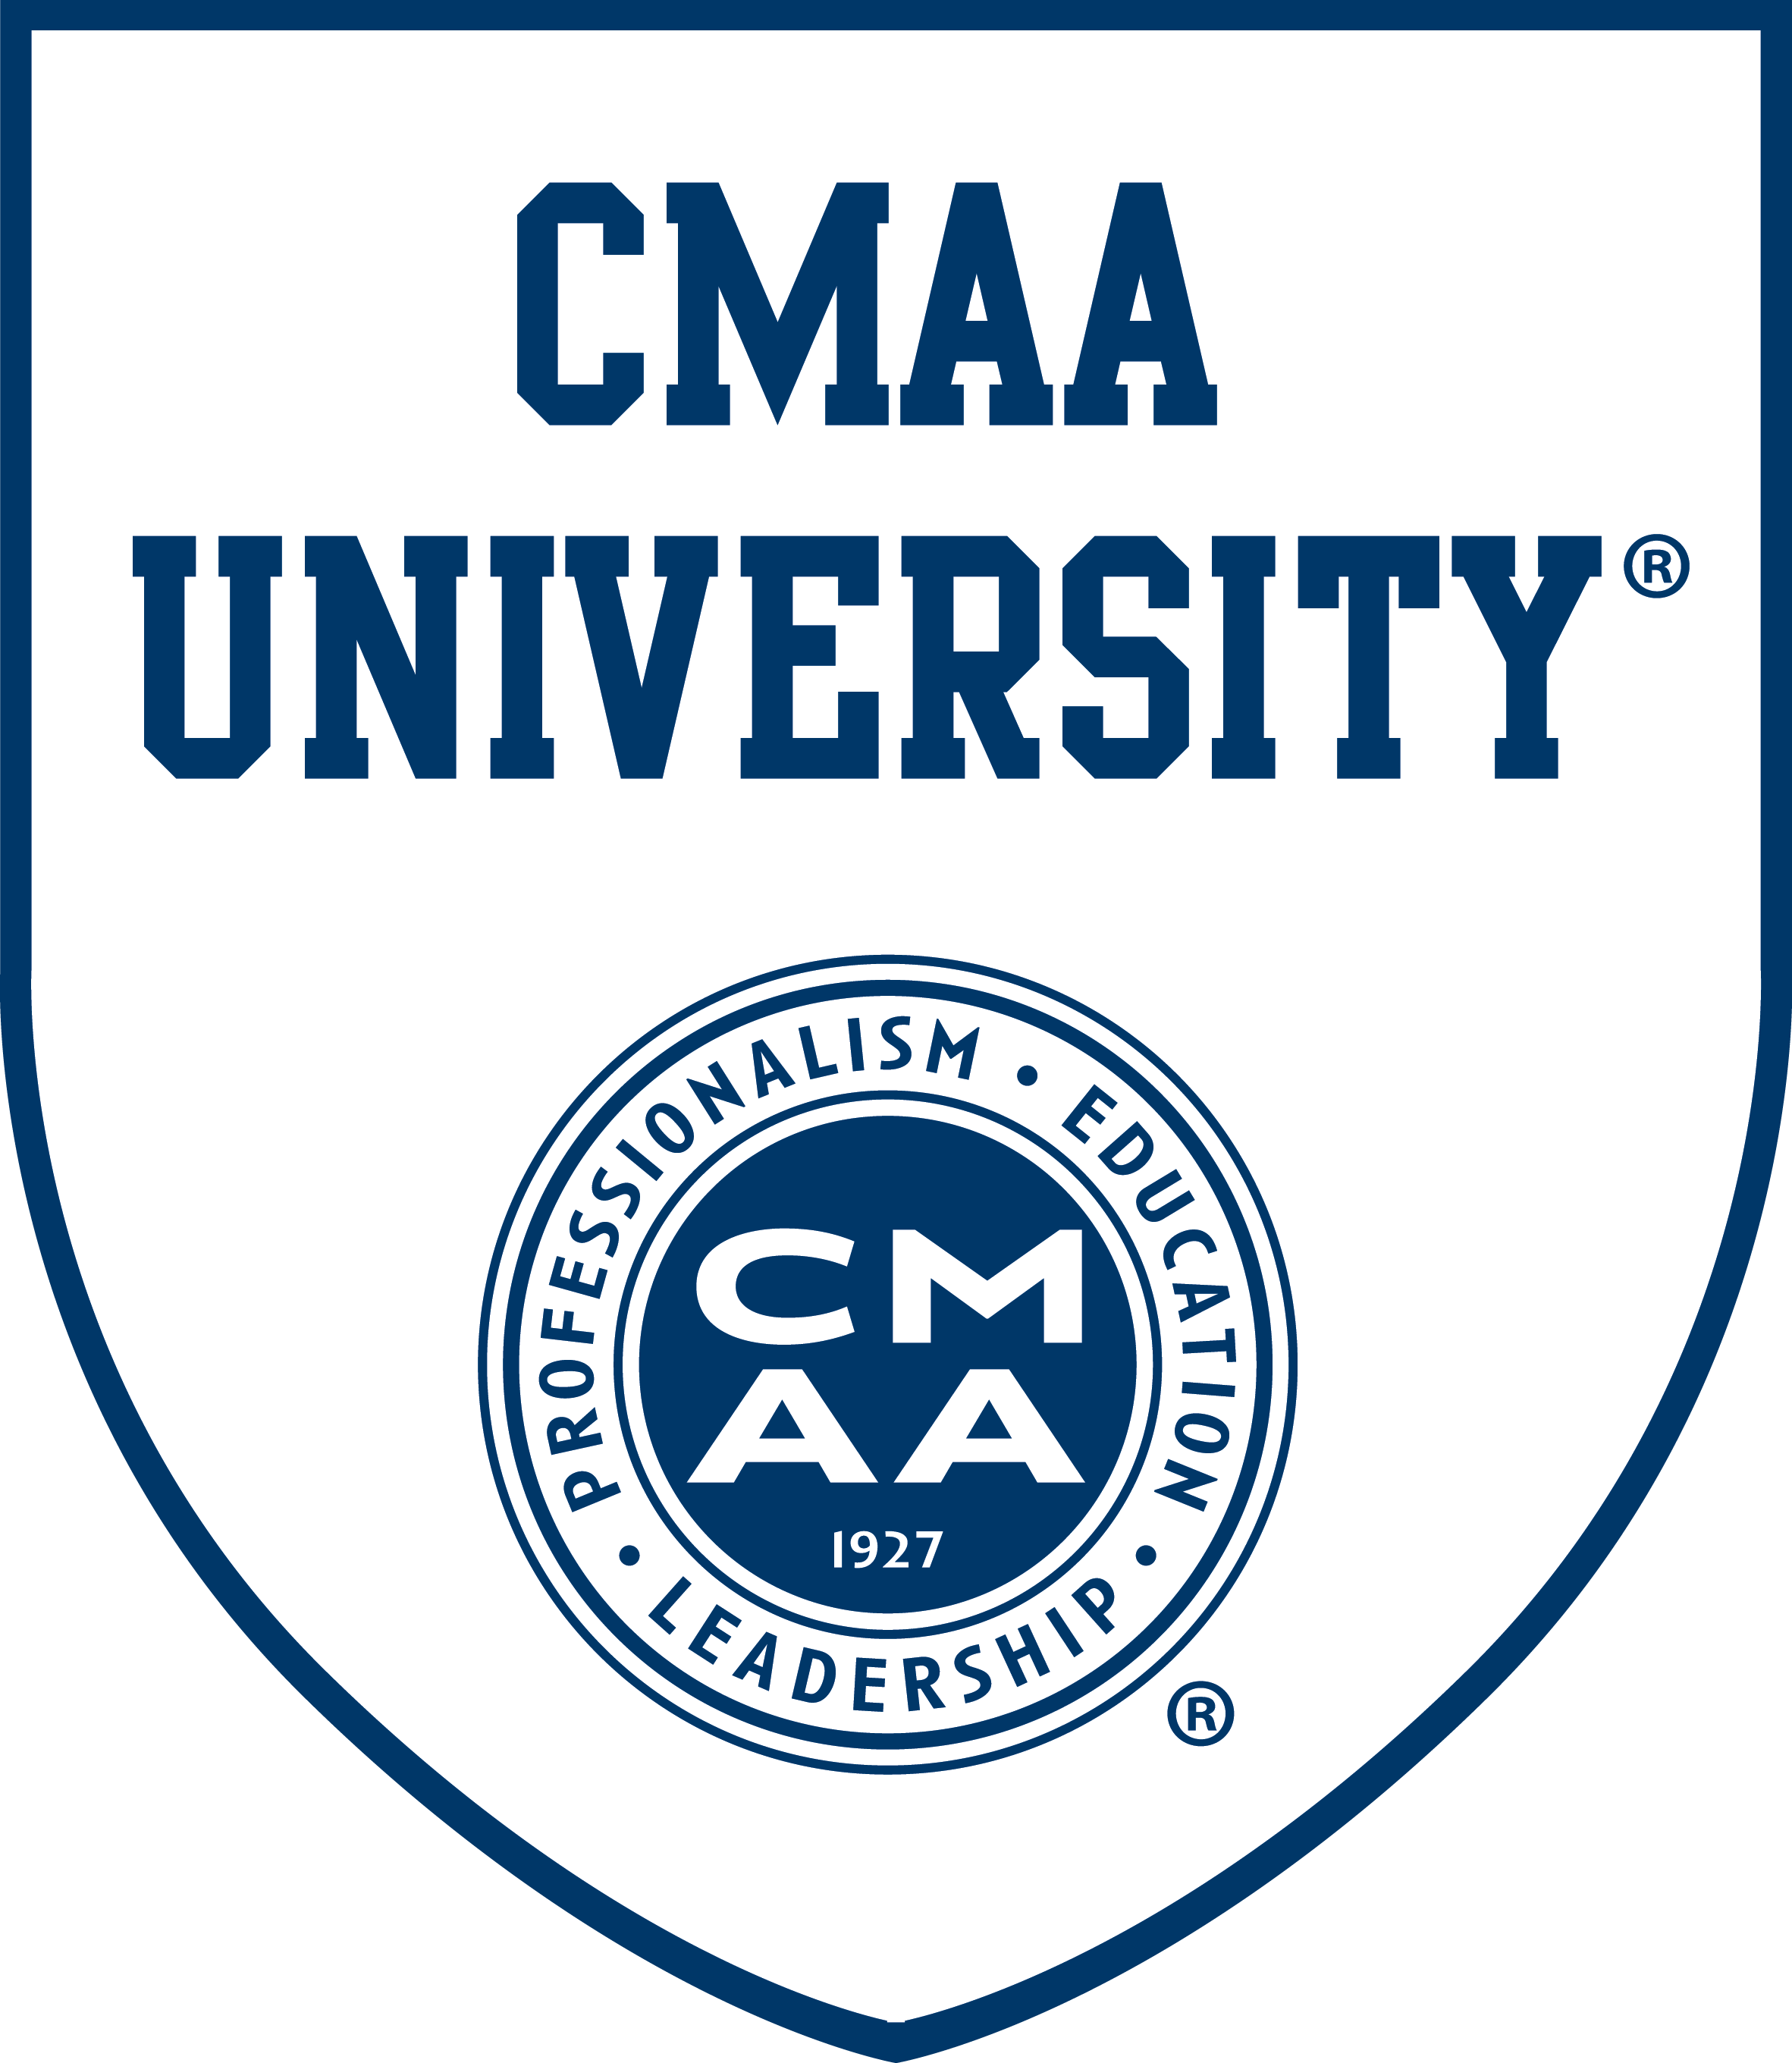 CMAA Univeresity Logo